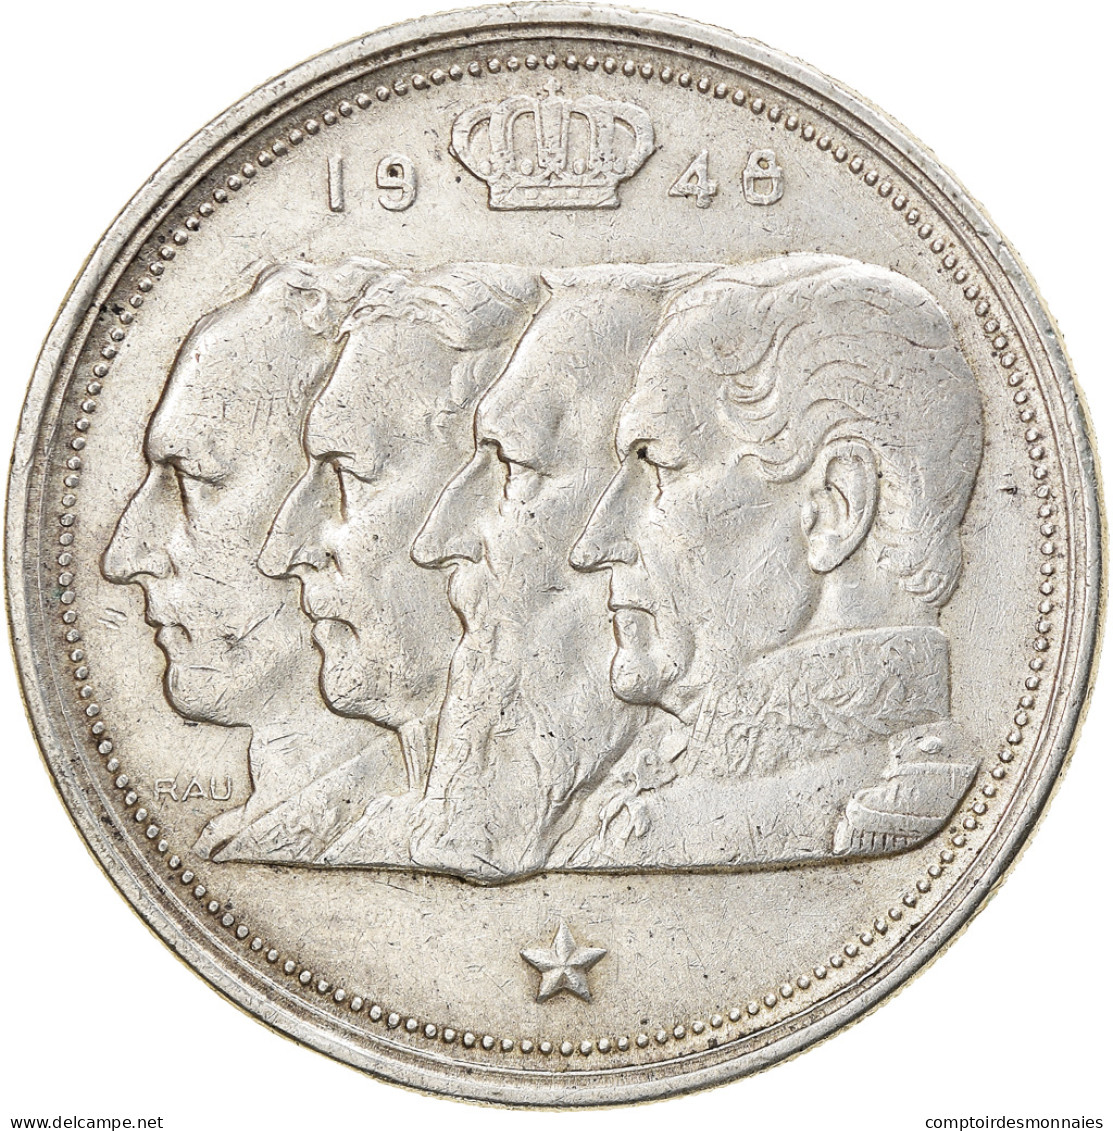 Monnaie, Belgique, 100 Francs, 100 Frank, 1948, TTB, Argent, KM:138.1 - 100 Franc